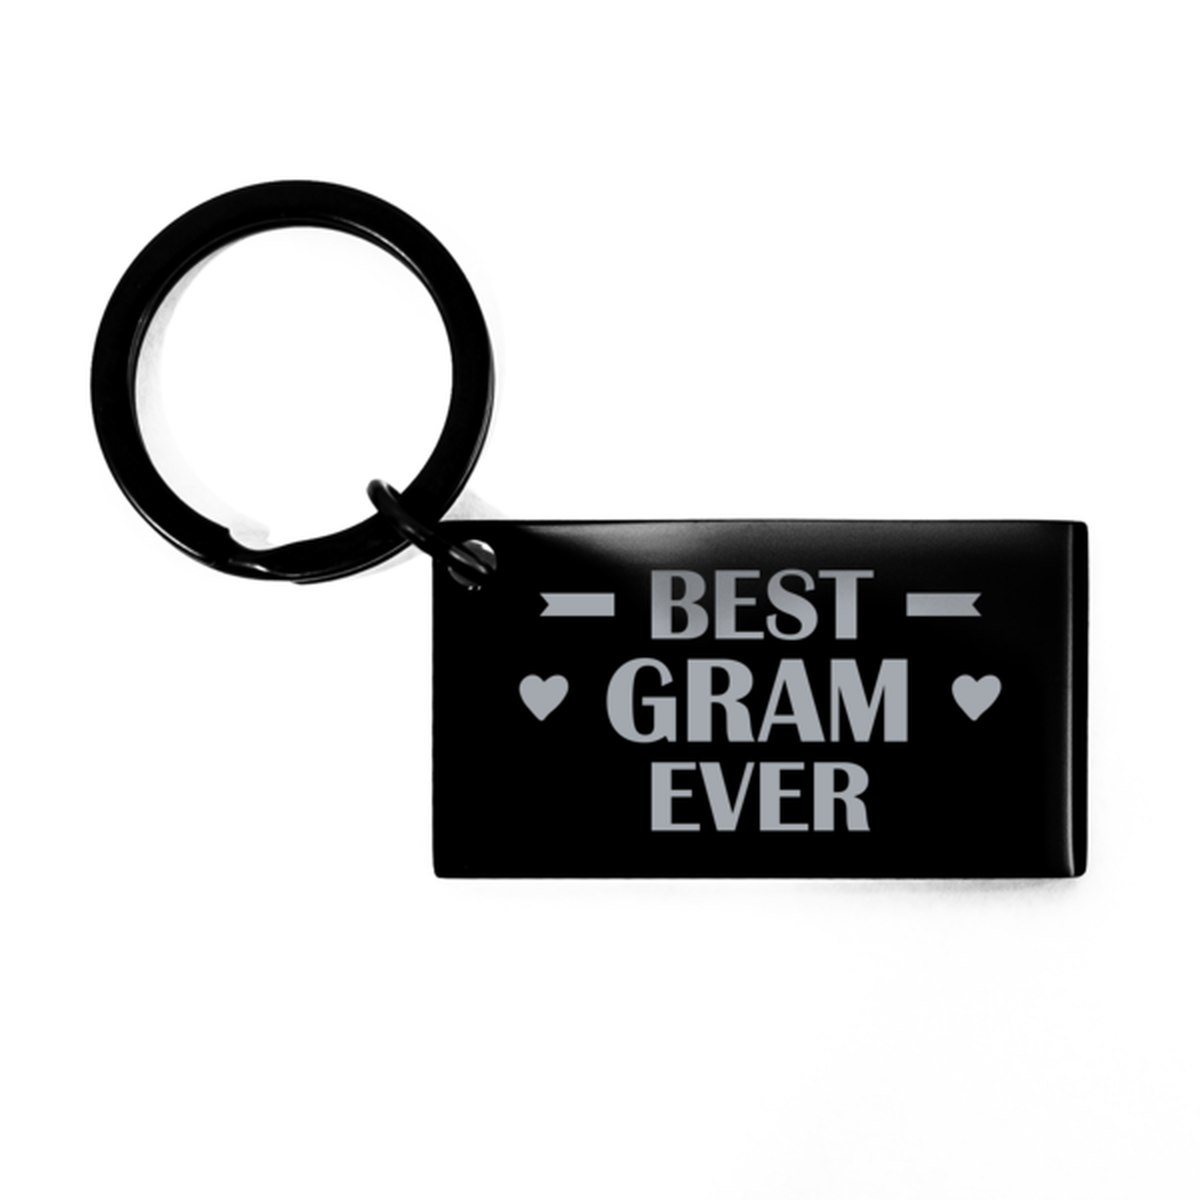 Best Gram Ever Gram Gifts, Funny Black Keychain For Gram, Birthday Engraved Keyring Presents For Women